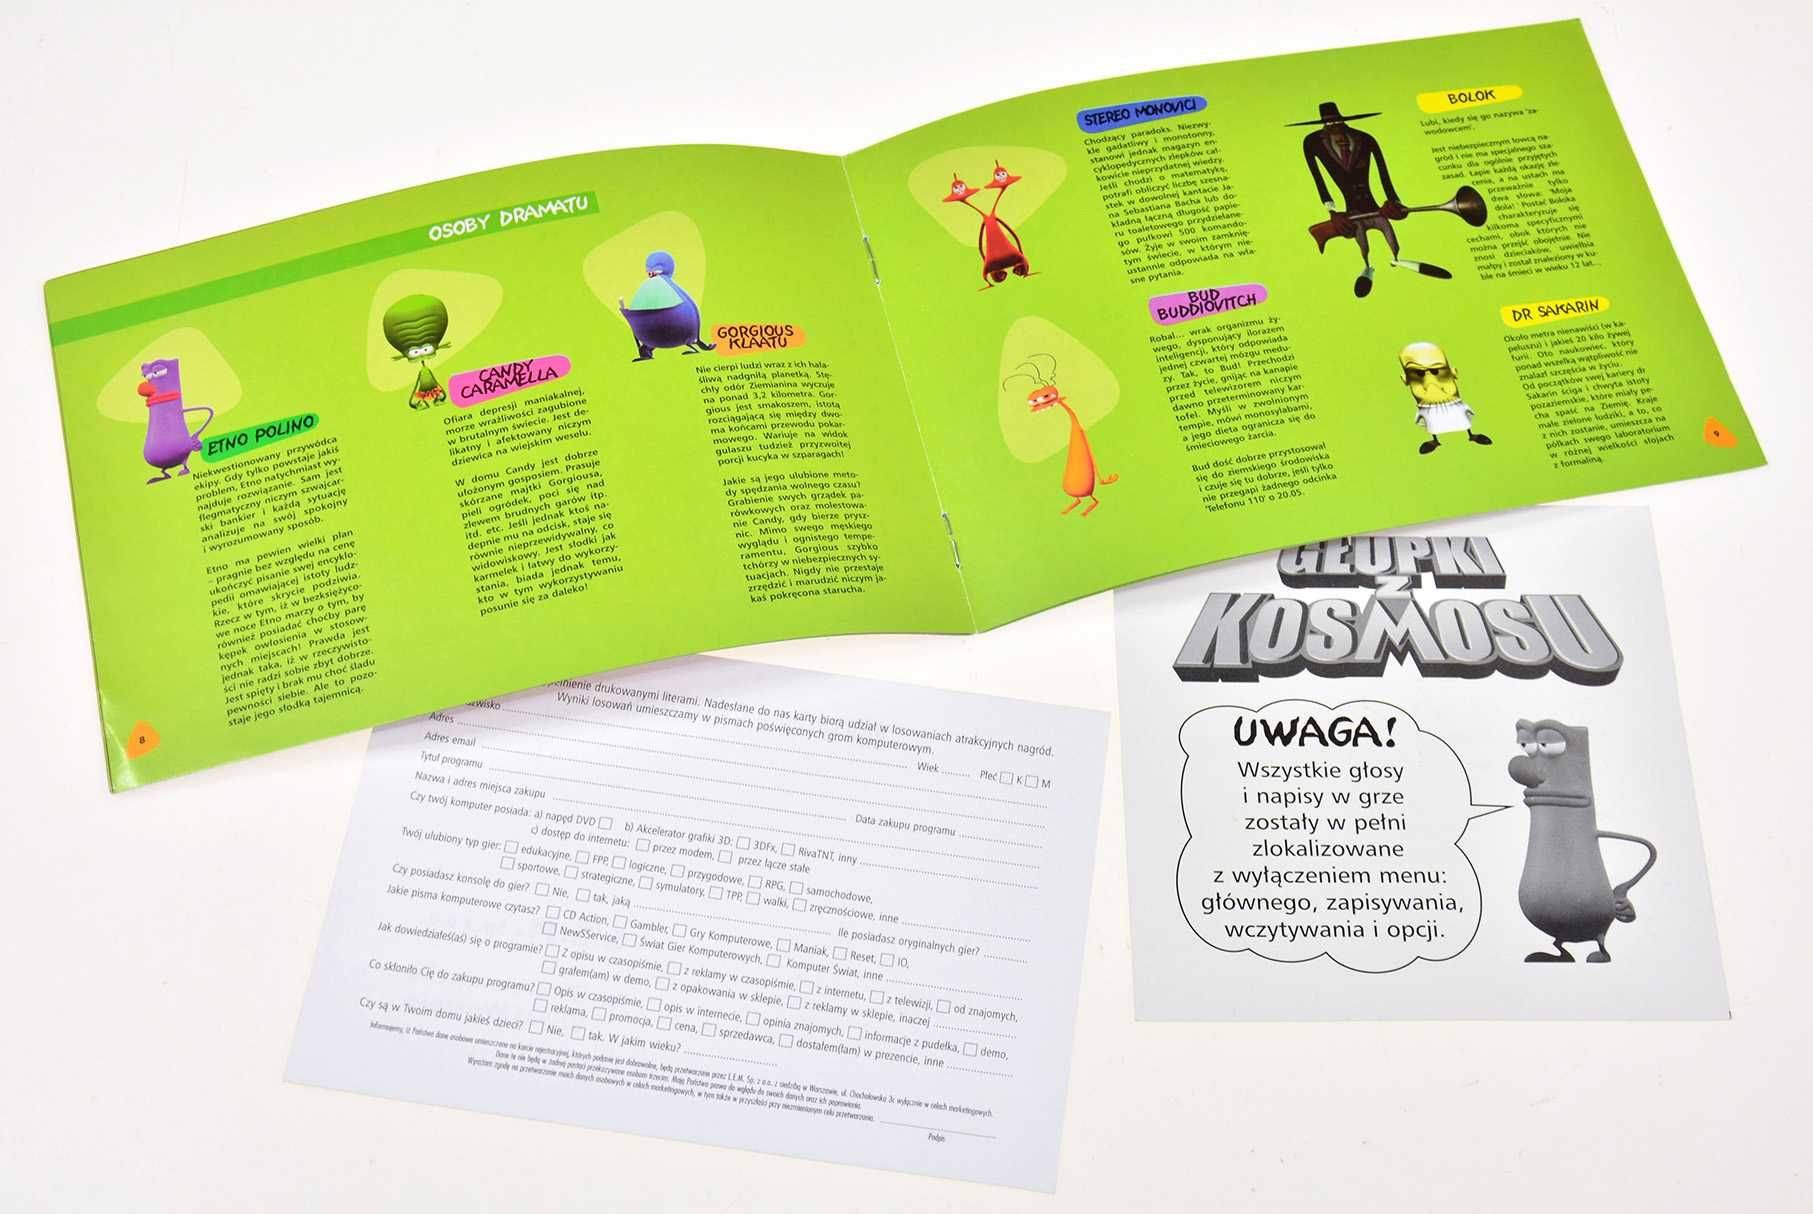 GŁUPKI Z KOSMOSU - duży big box, pierwsze wydanie PL, 4CD, Ubi Soft